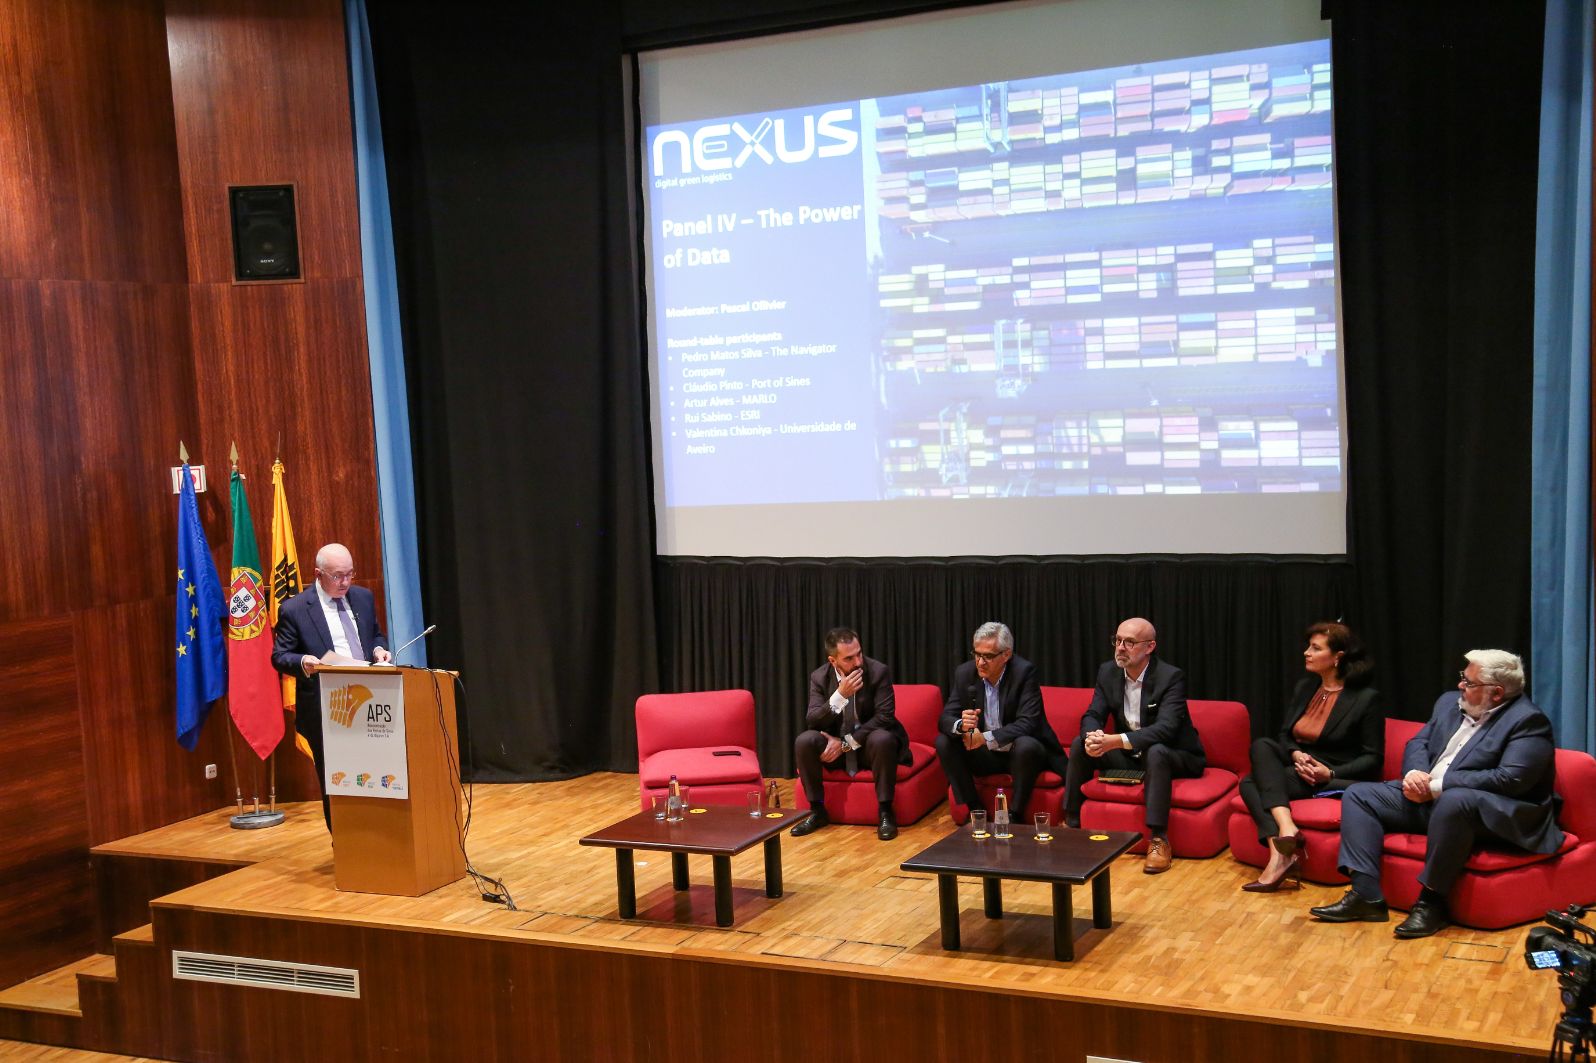 Agenda NEXUS responde aos desafios da transição energética e digital do corredor logístico de Sines